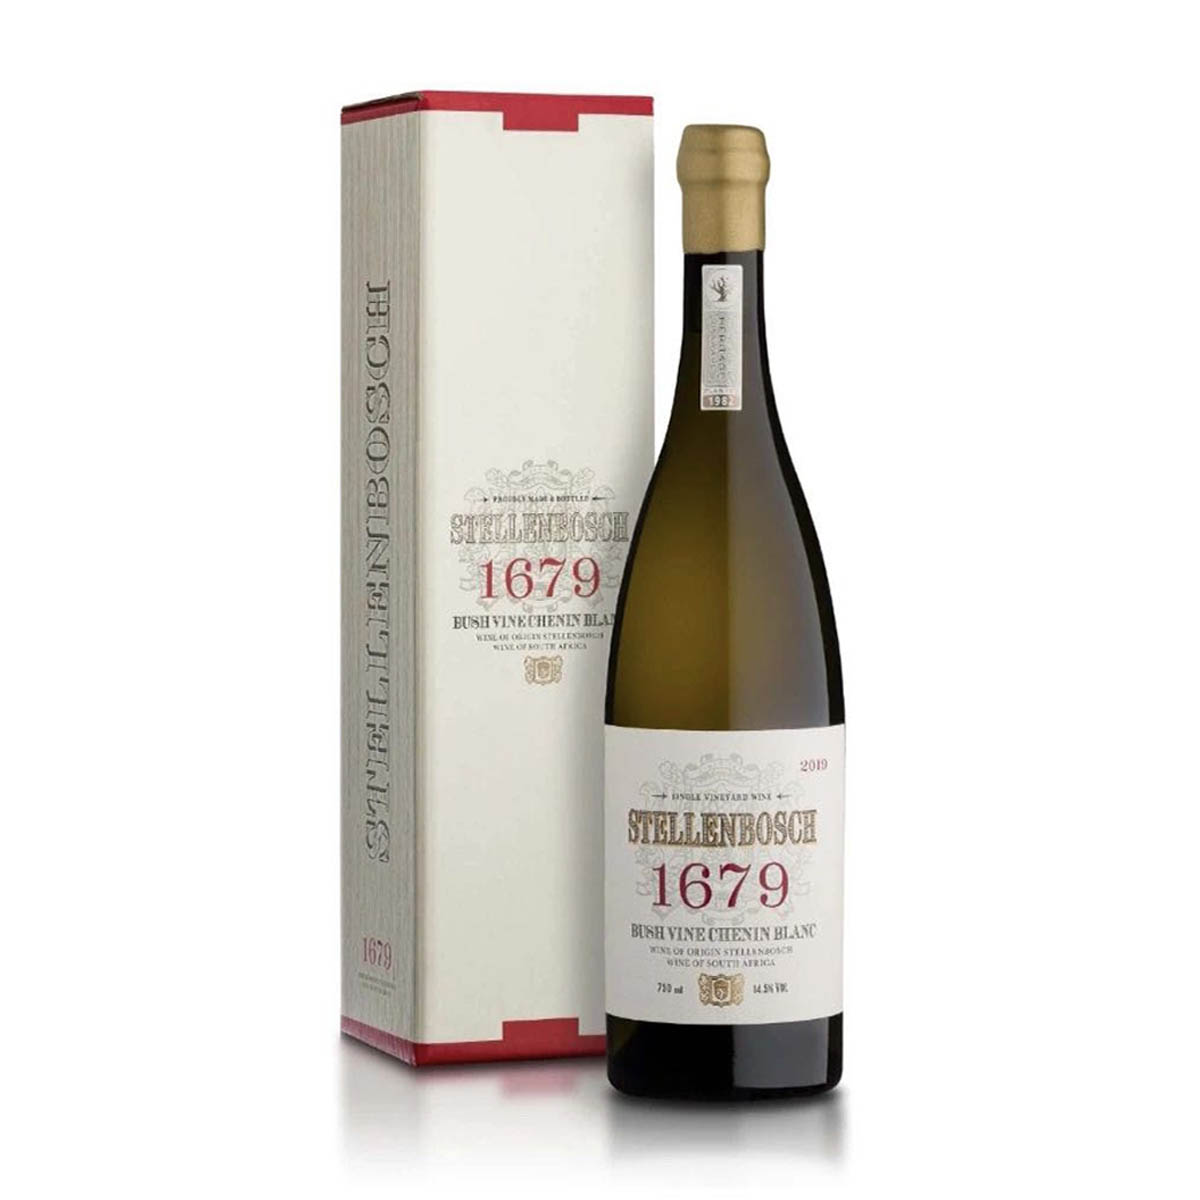 南非斯泰伦博斯1679老藤白诗南白葡萄酒 